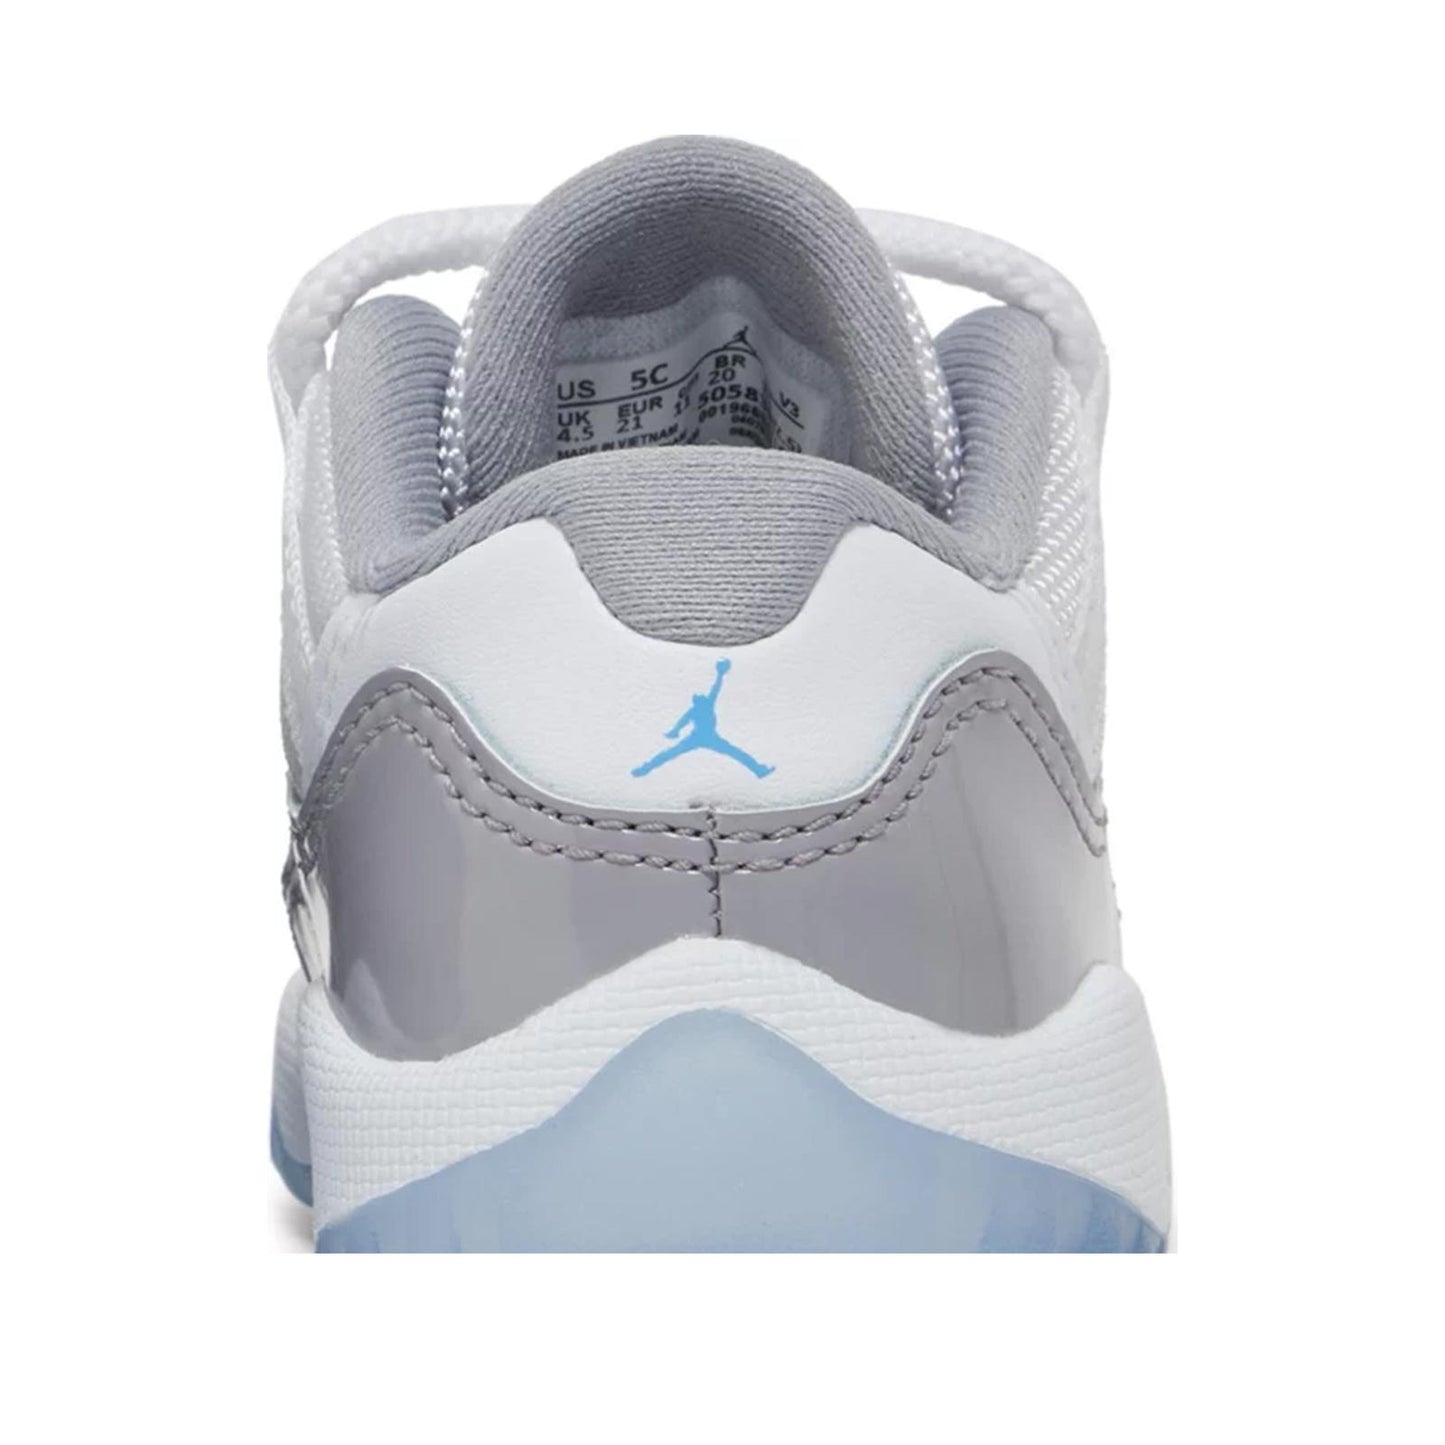 Air Jordan 11 Low (TD), Cement Grey